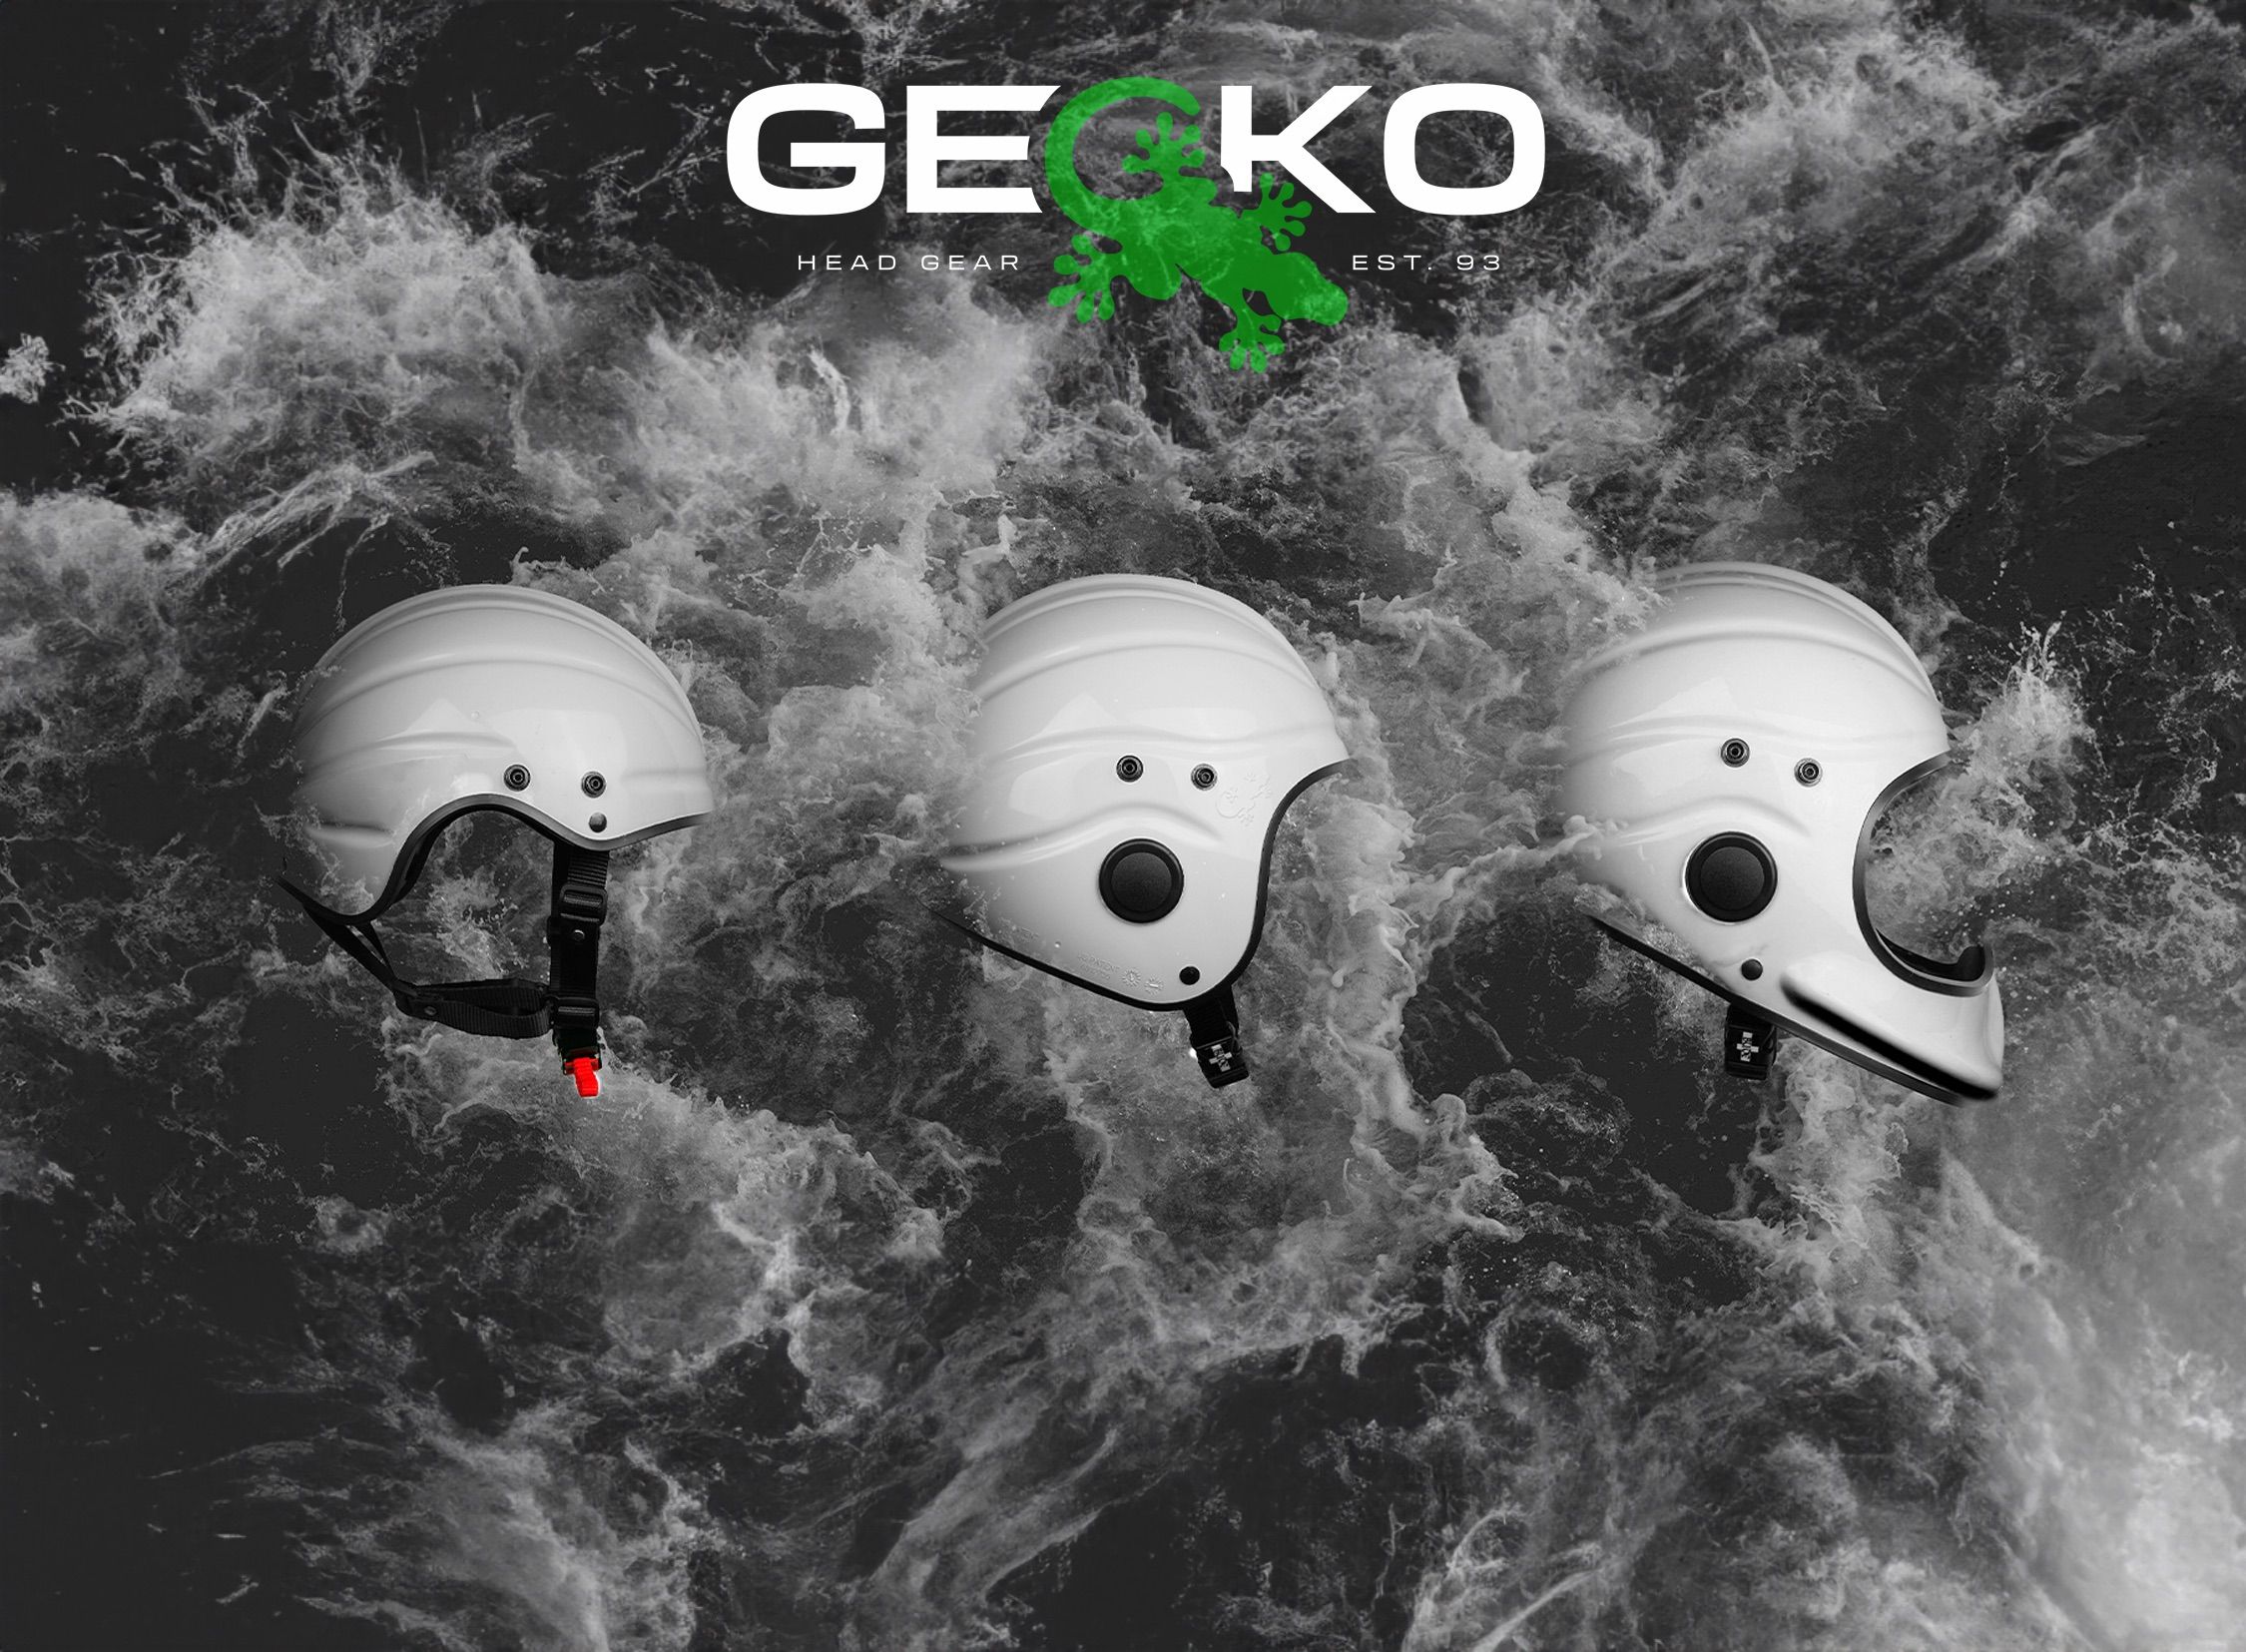 Gecko Head Gear - Brochure